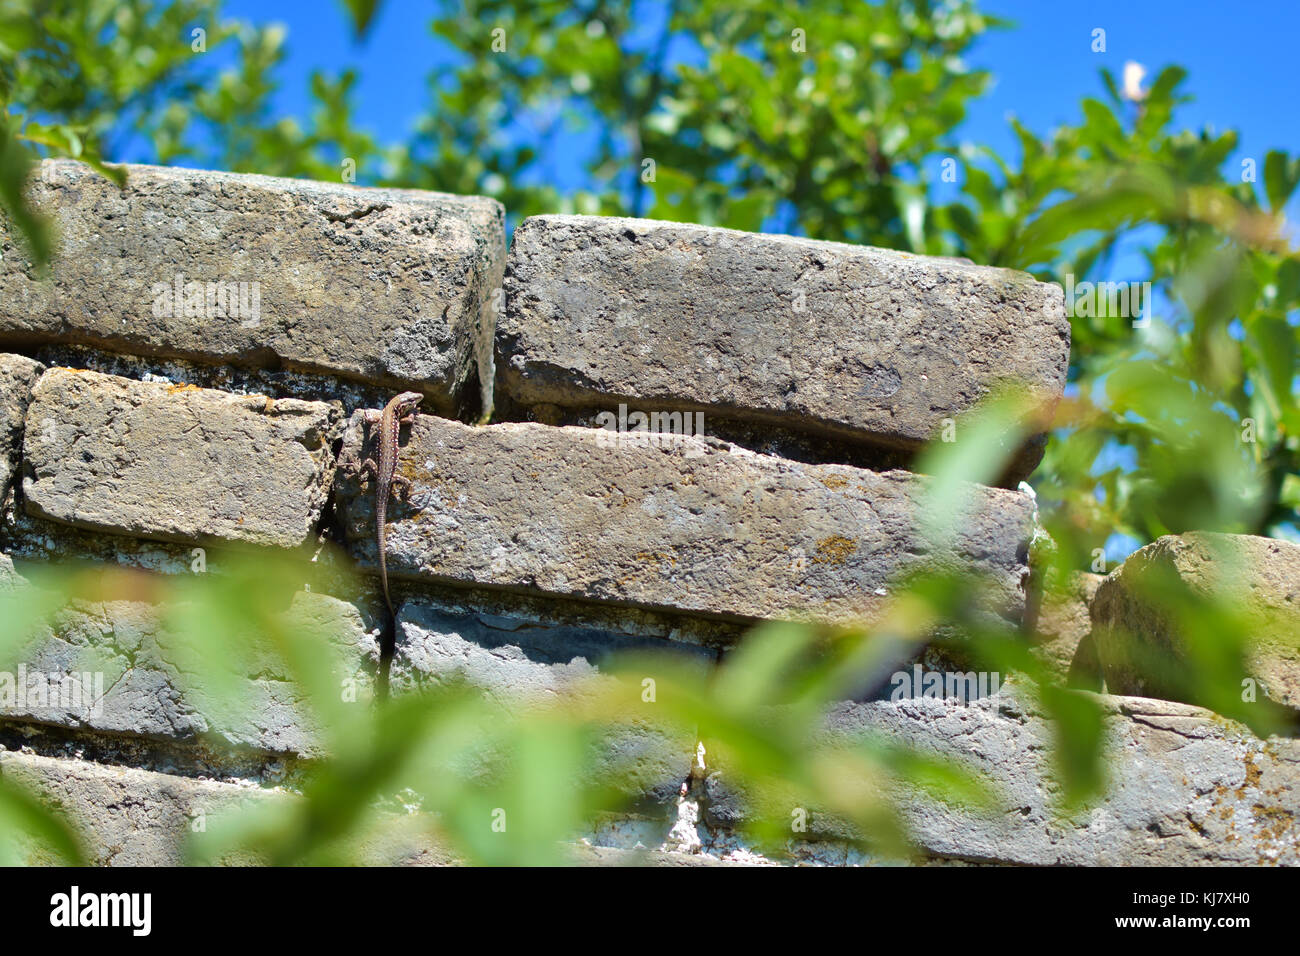 Ein gecko klettert auf der Großen Mauer von China, jiankou. Dieser Teil der Wand ist nicht gut gepflegt und es gibt viele Tiere zu sehen. Stockfoto